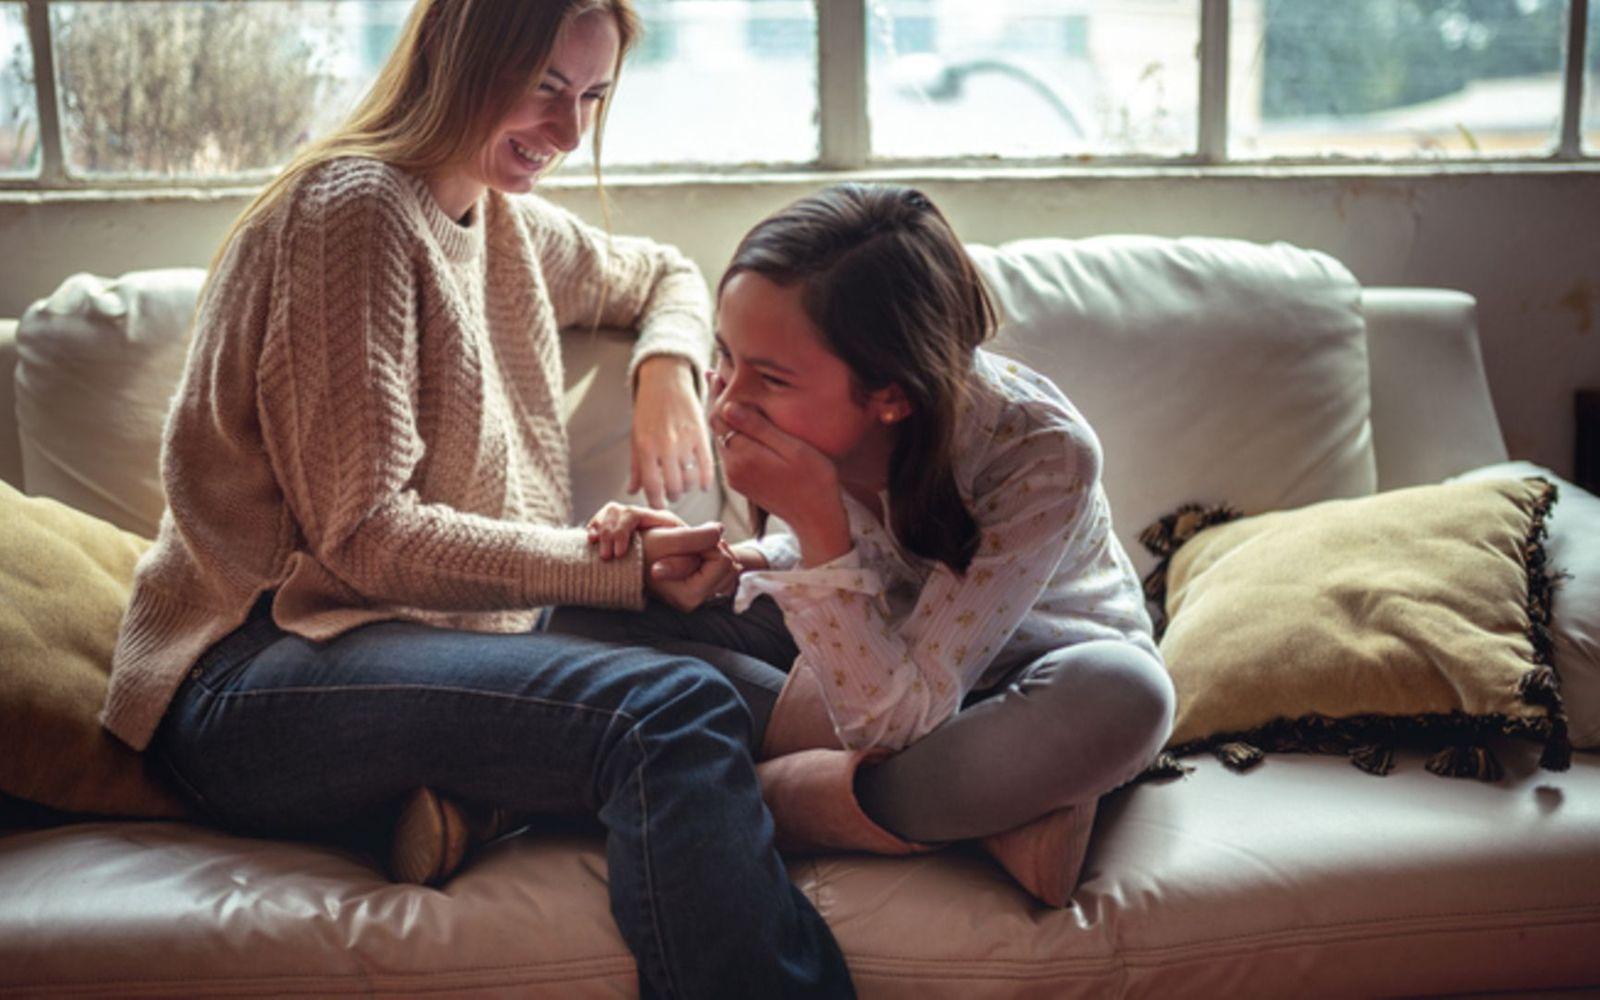 Mutter und Tochter sitzen vertraut auf der Couch und die Tochter lacht mit der Hand vor dem Mund